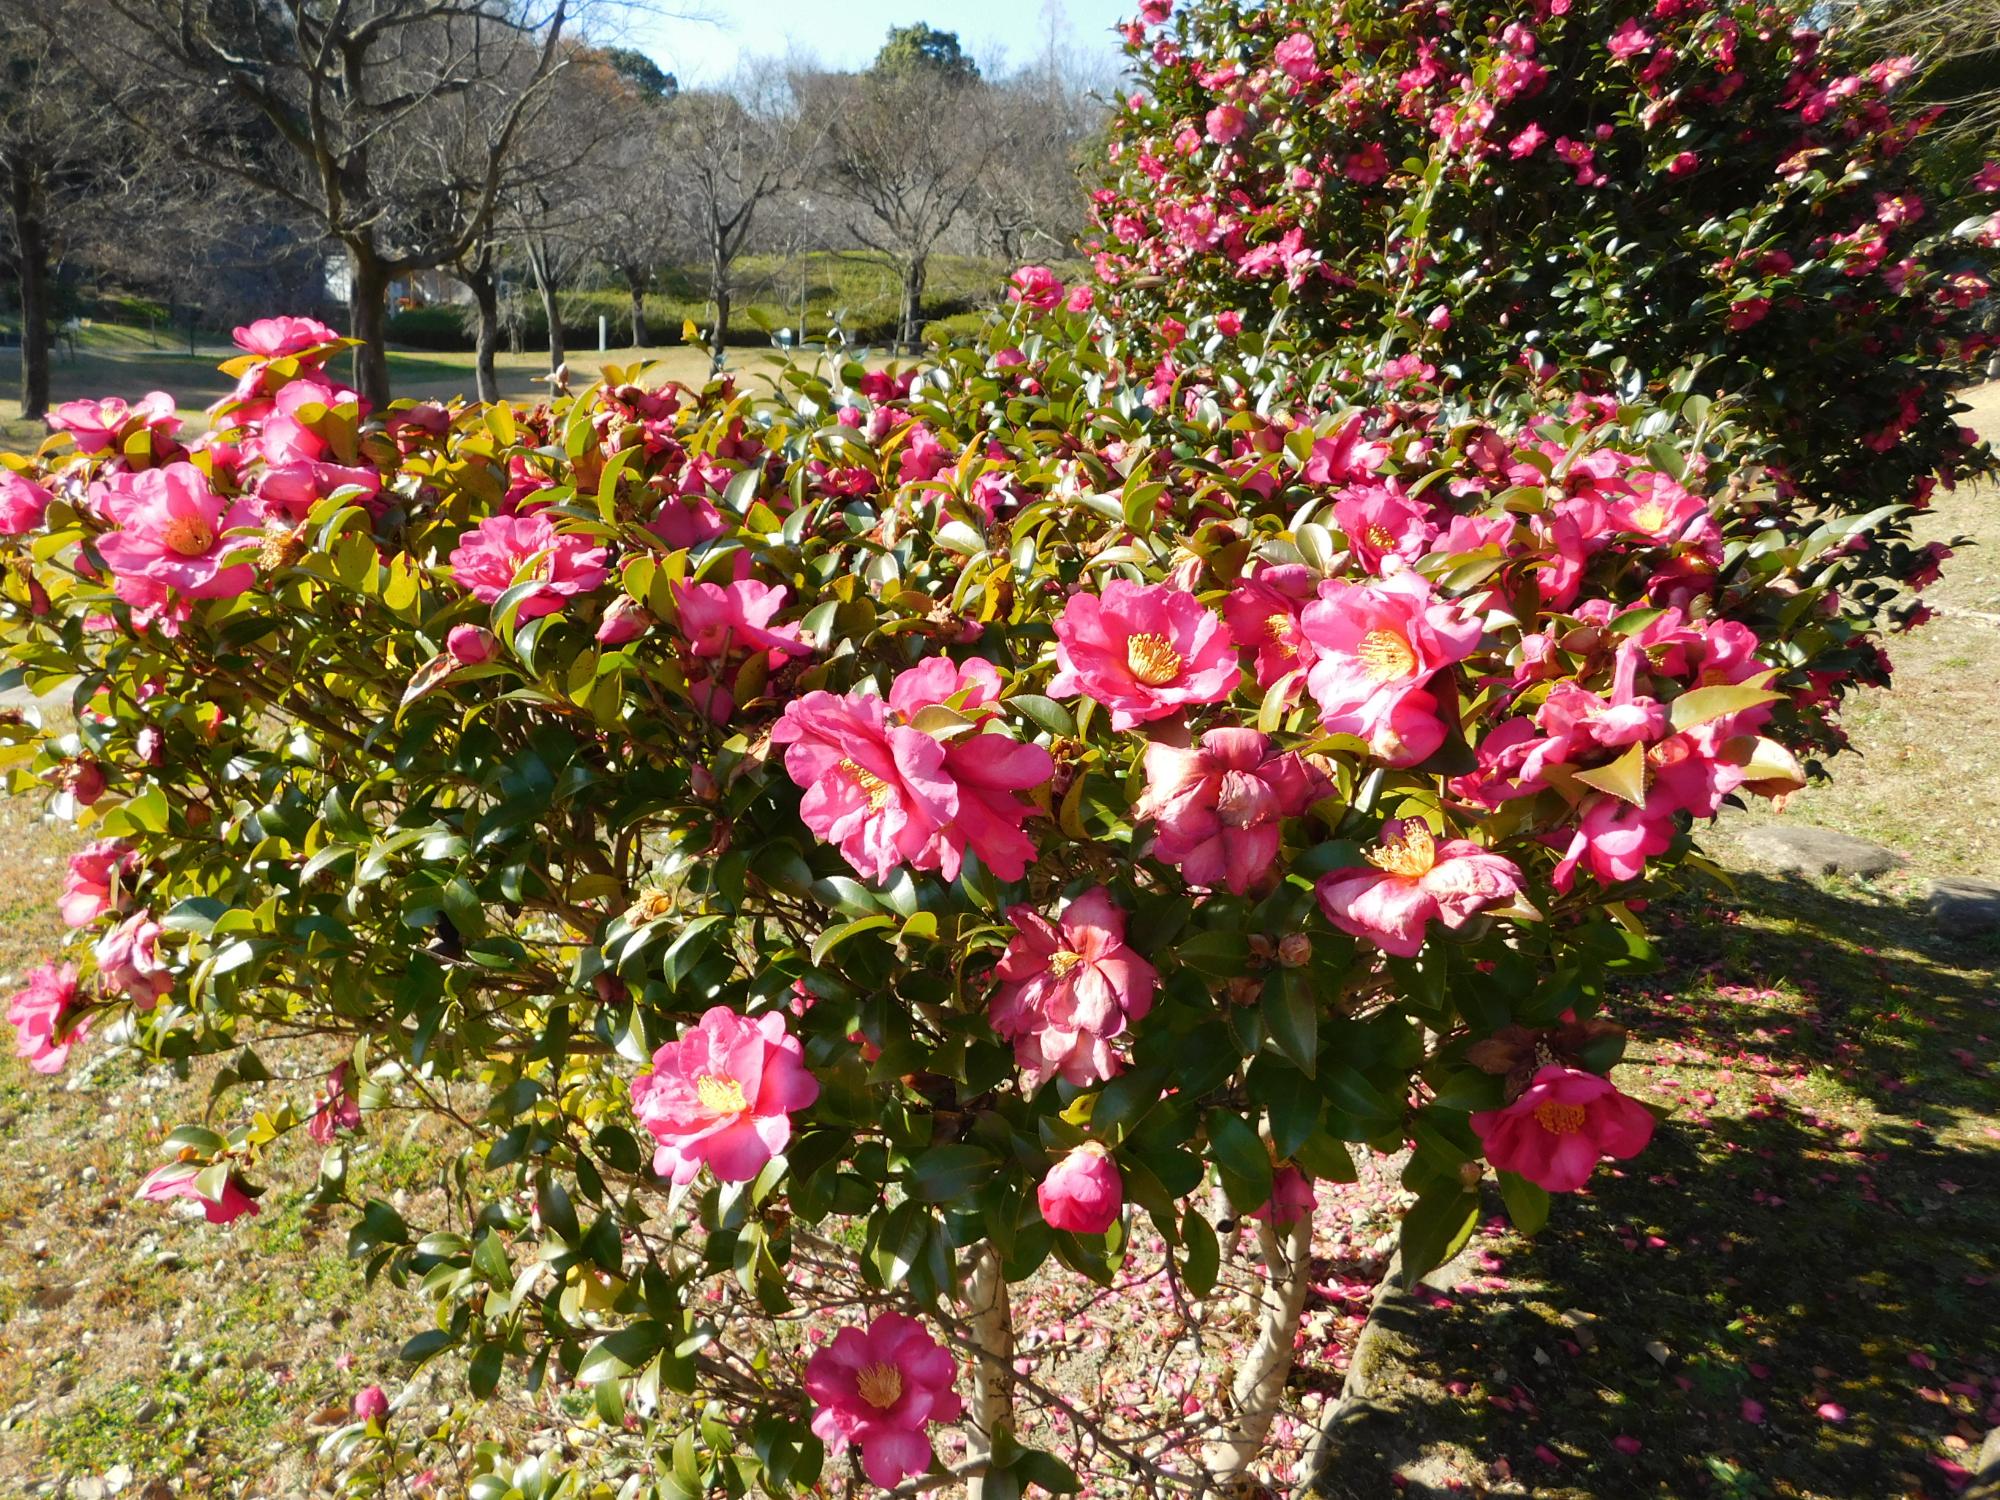 この時期、公園の中では、寒ツバキやサザンカの赤い花が見られます。(写真は、中池近くに咲くサザンカの花)